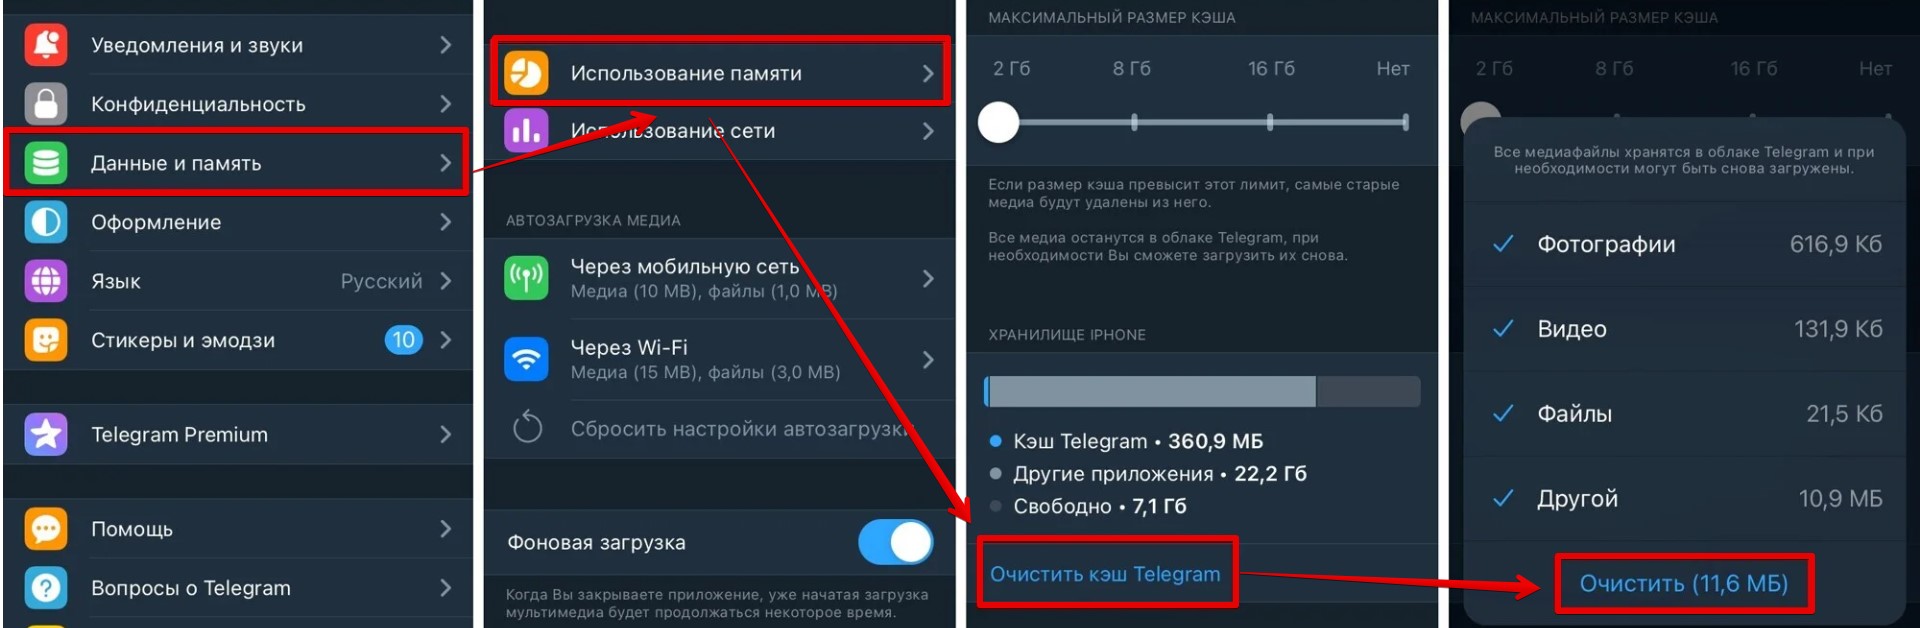 Как очистить Telegram на iPhone: пошаговая инструкция